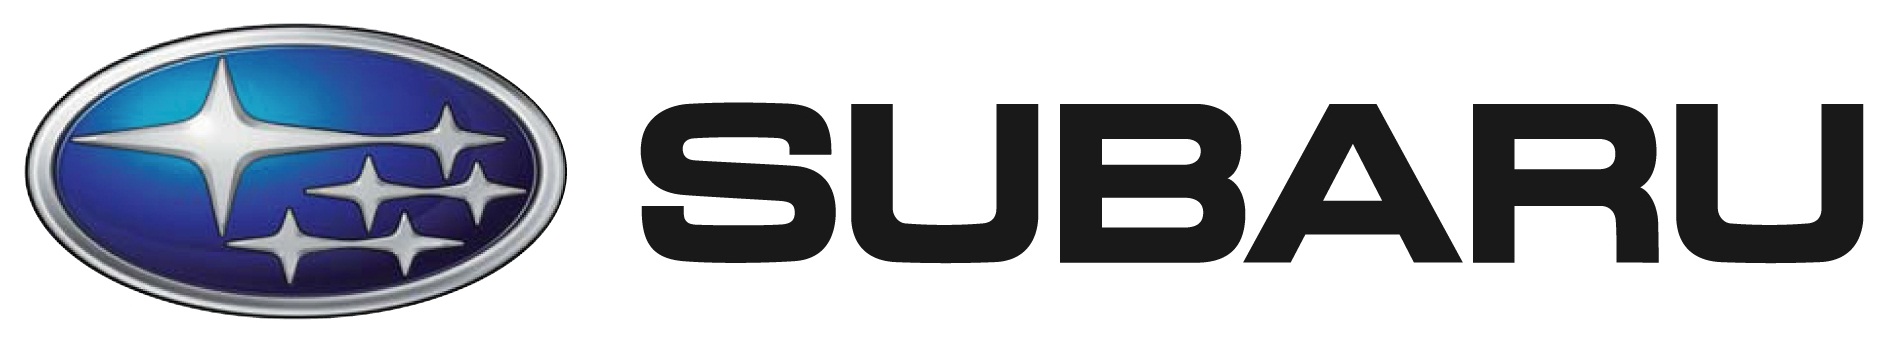 subaru-logo-wallpaper.jpg